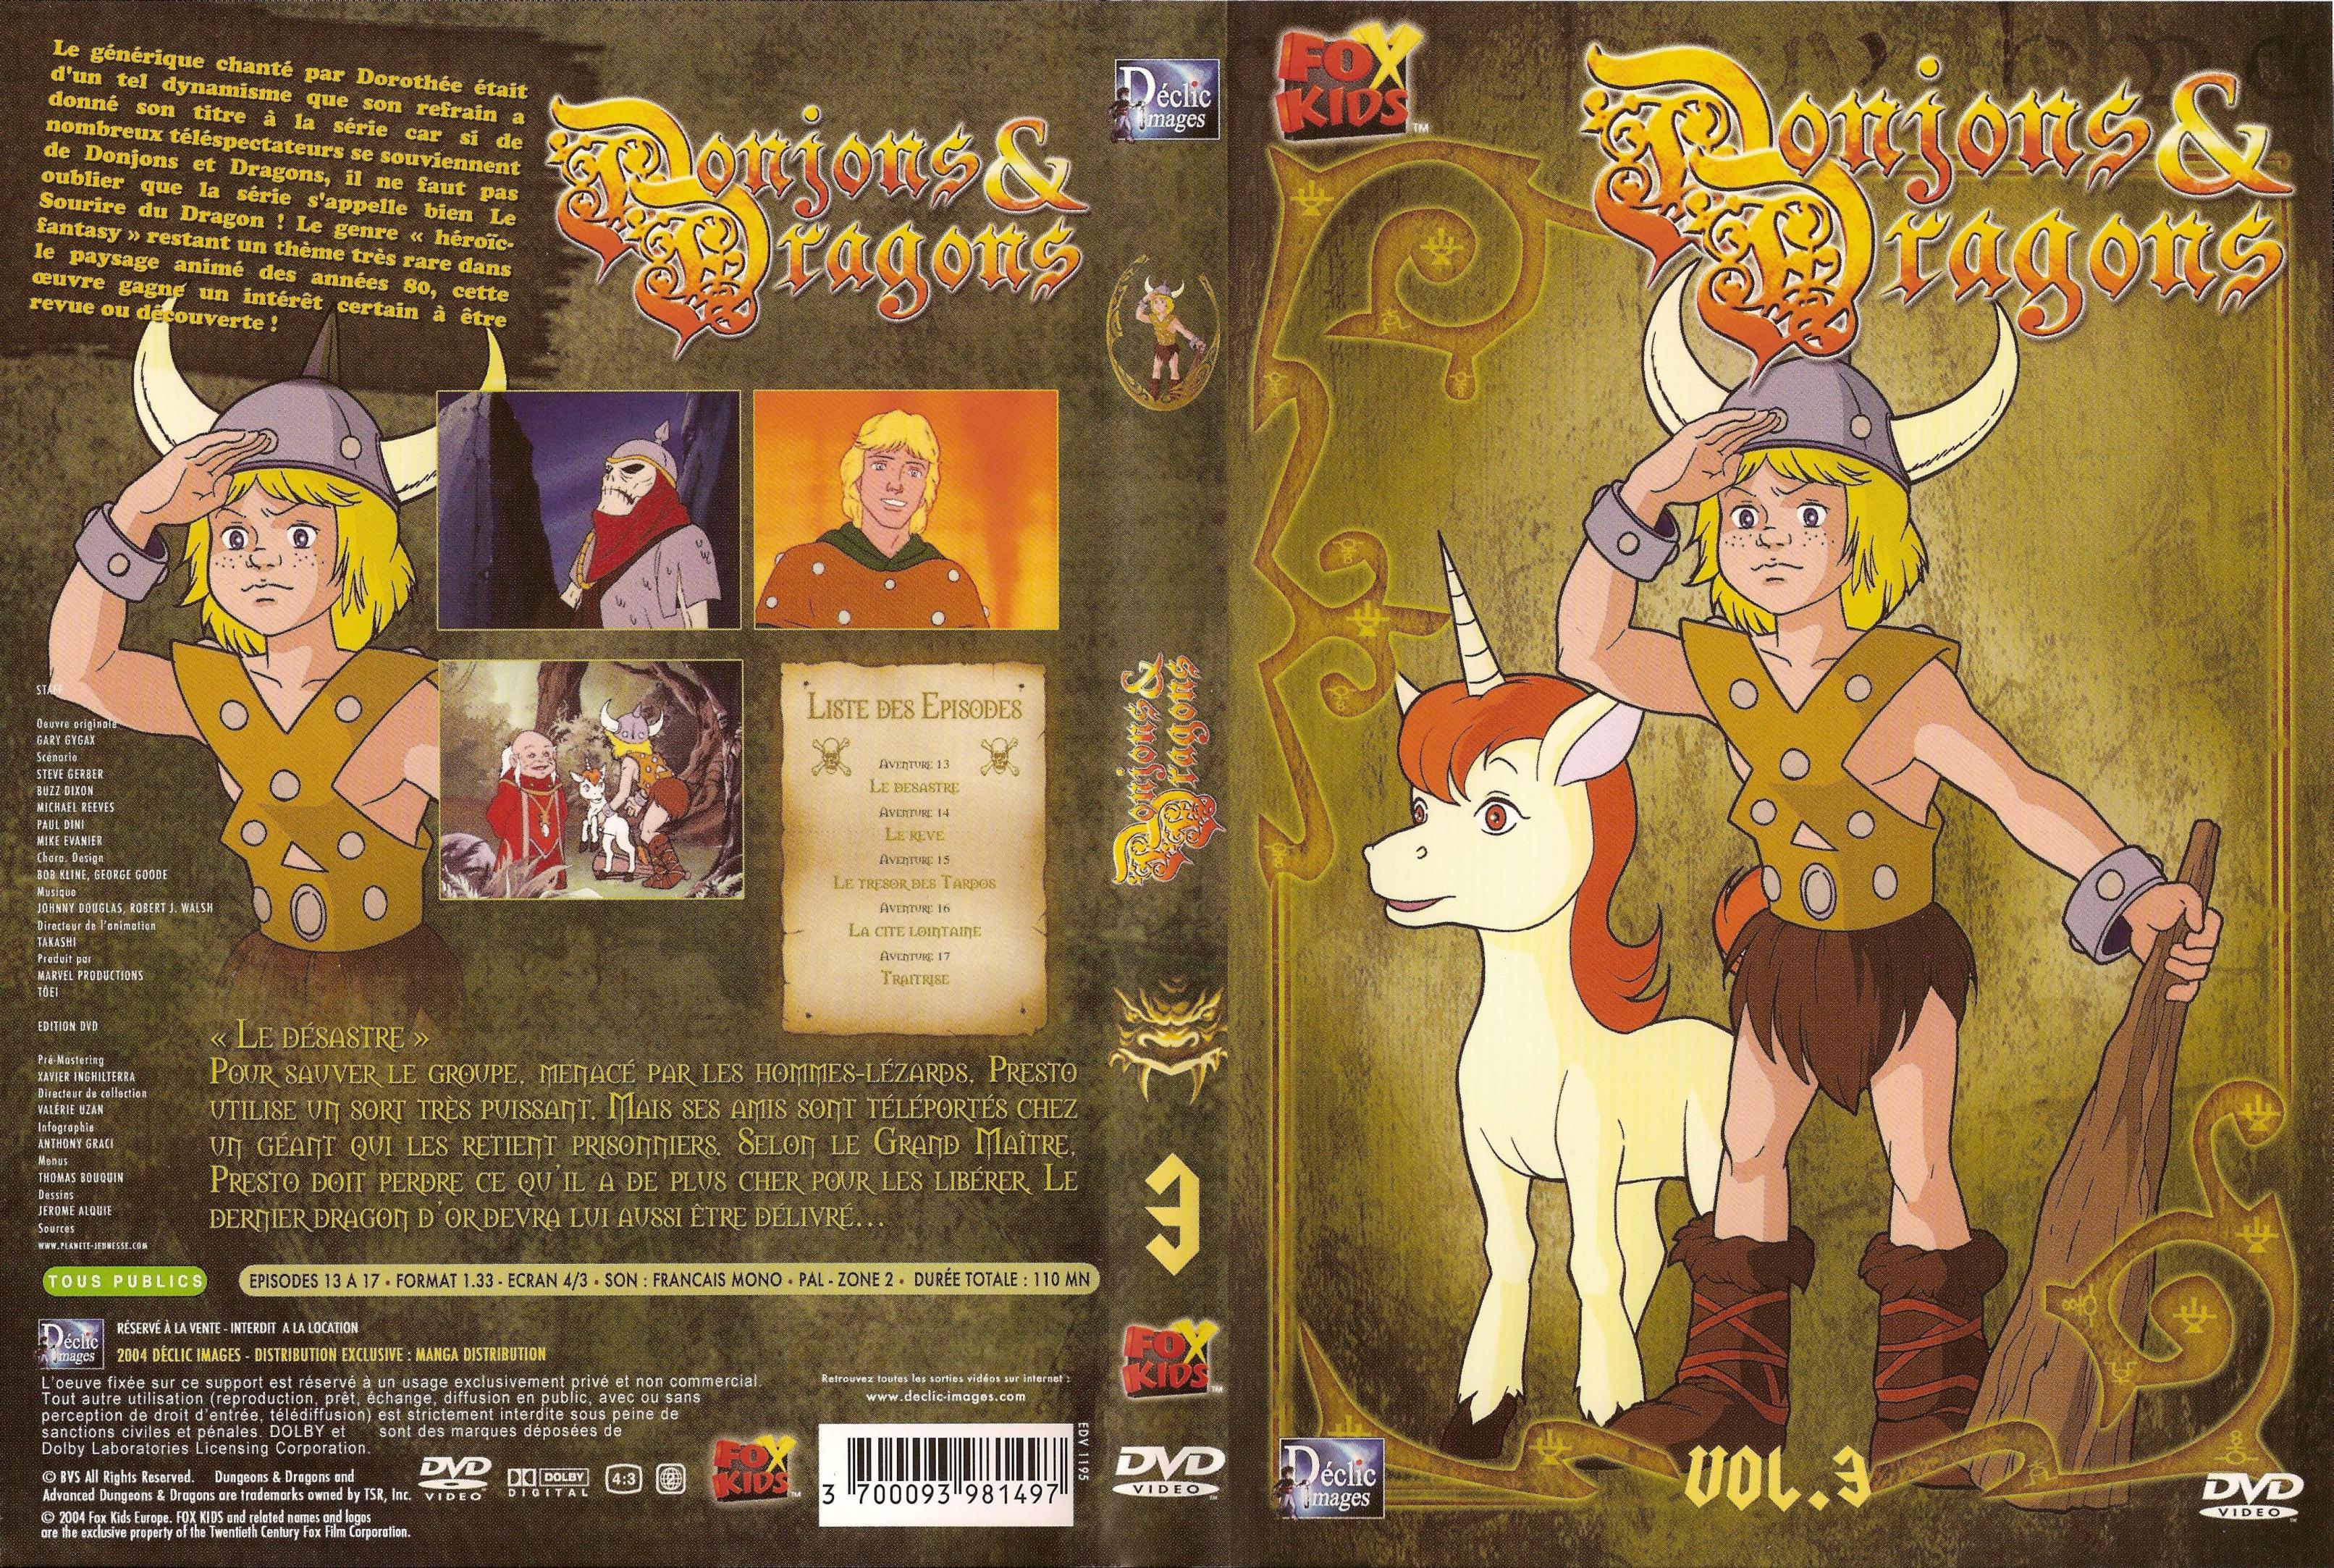 Jaquette DVD Donjons et dragons vol 3